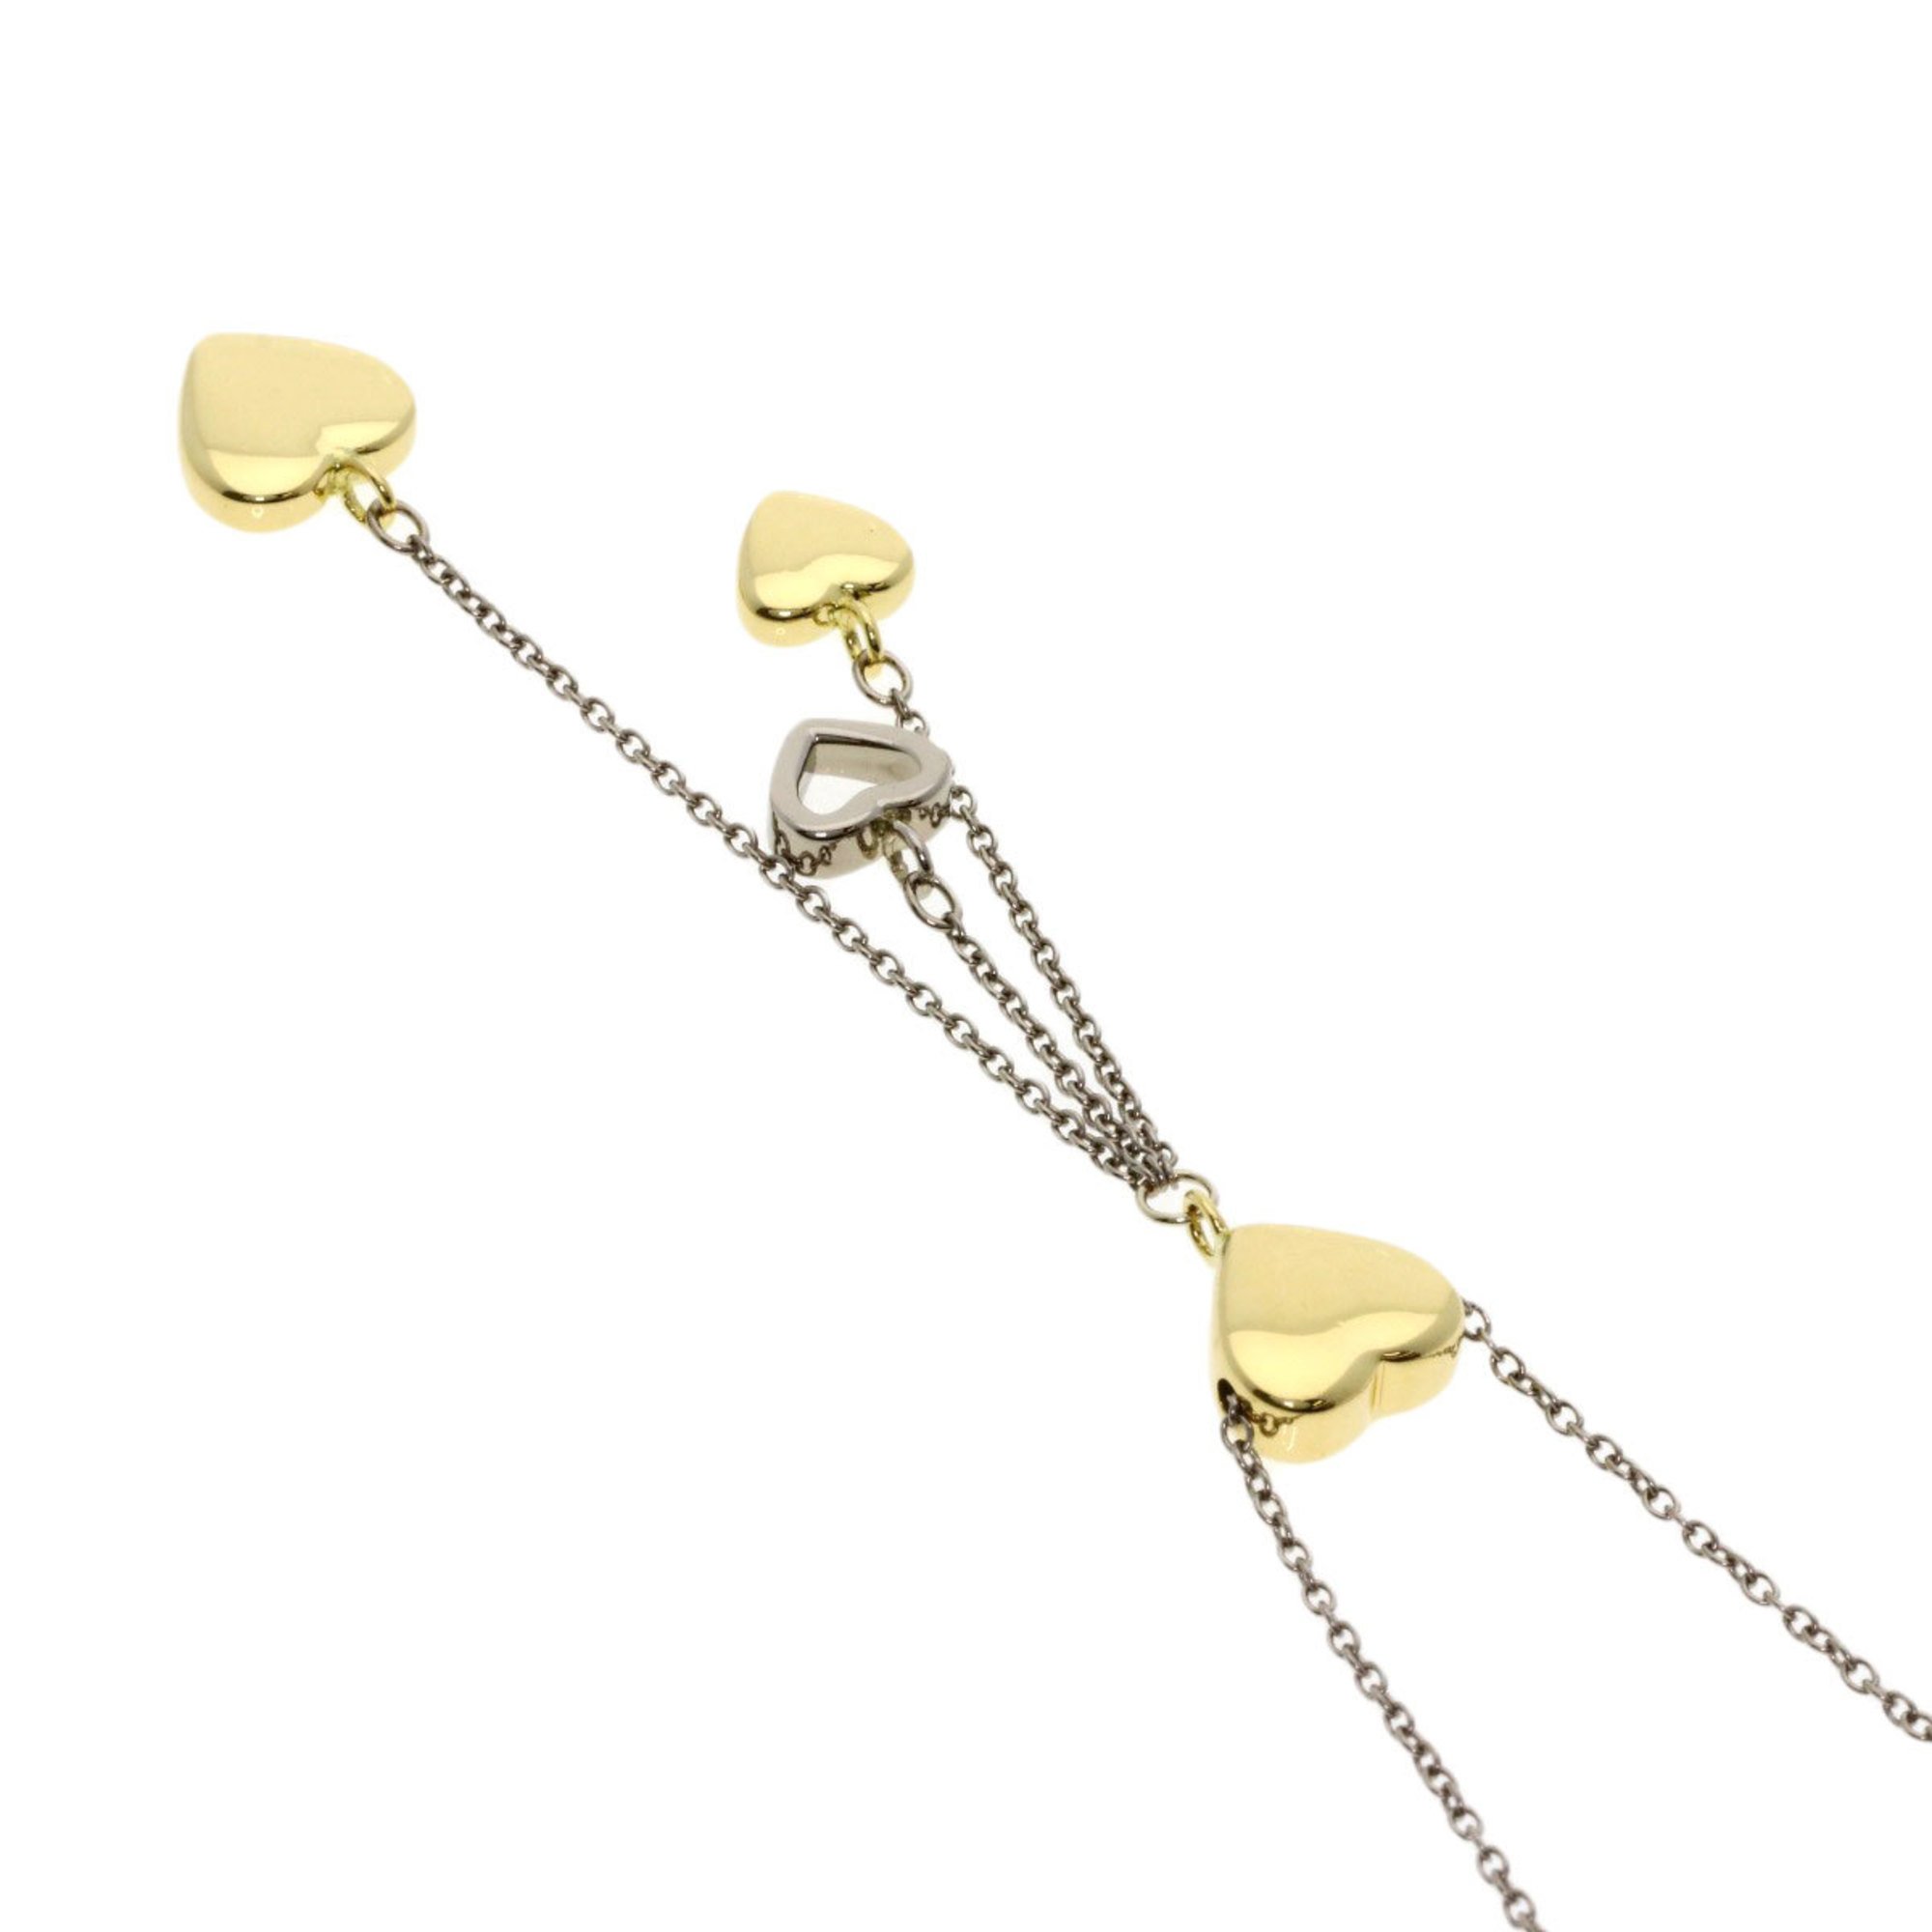 Tiffany Multi Heart Drop Necklace K18 White Gold K18YG Women's